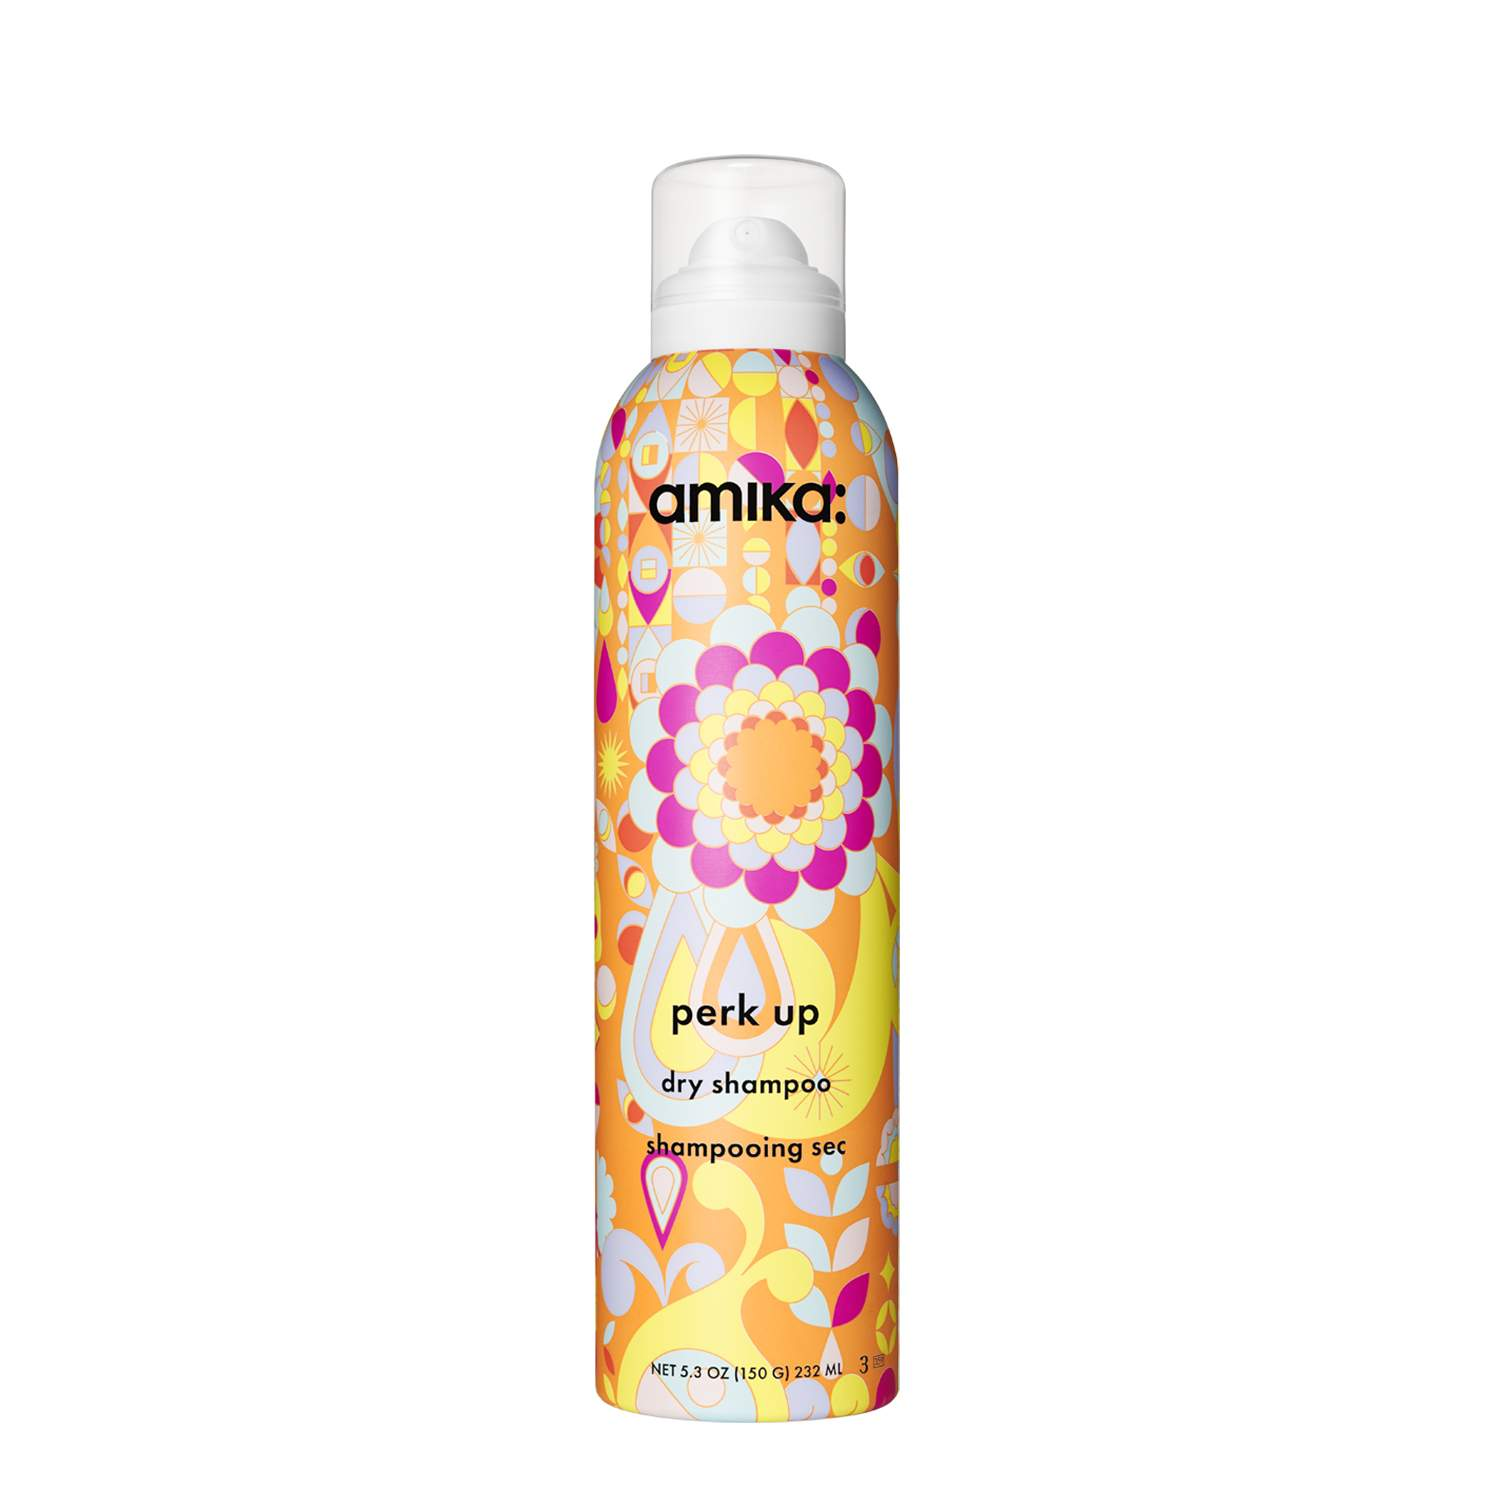 amika PERK UP dry shampoo  1